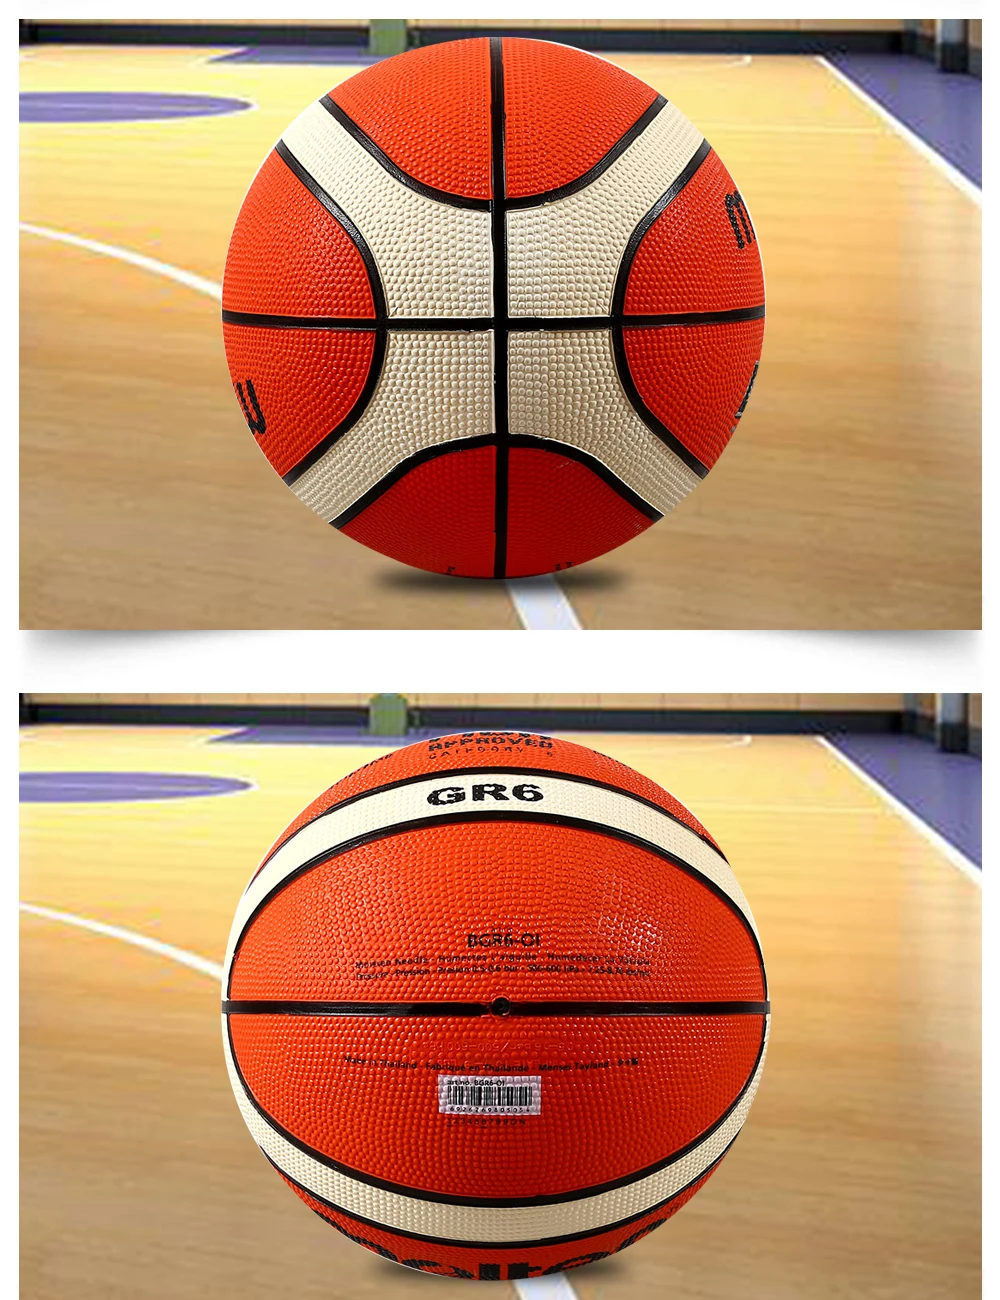 Расплавленный Баскетбольный мяч GR7 высокого качества из натуральной расплавленной Резины официальный размер 7 Размер 6 бесплатно с сетчатой сумкой+ иглой